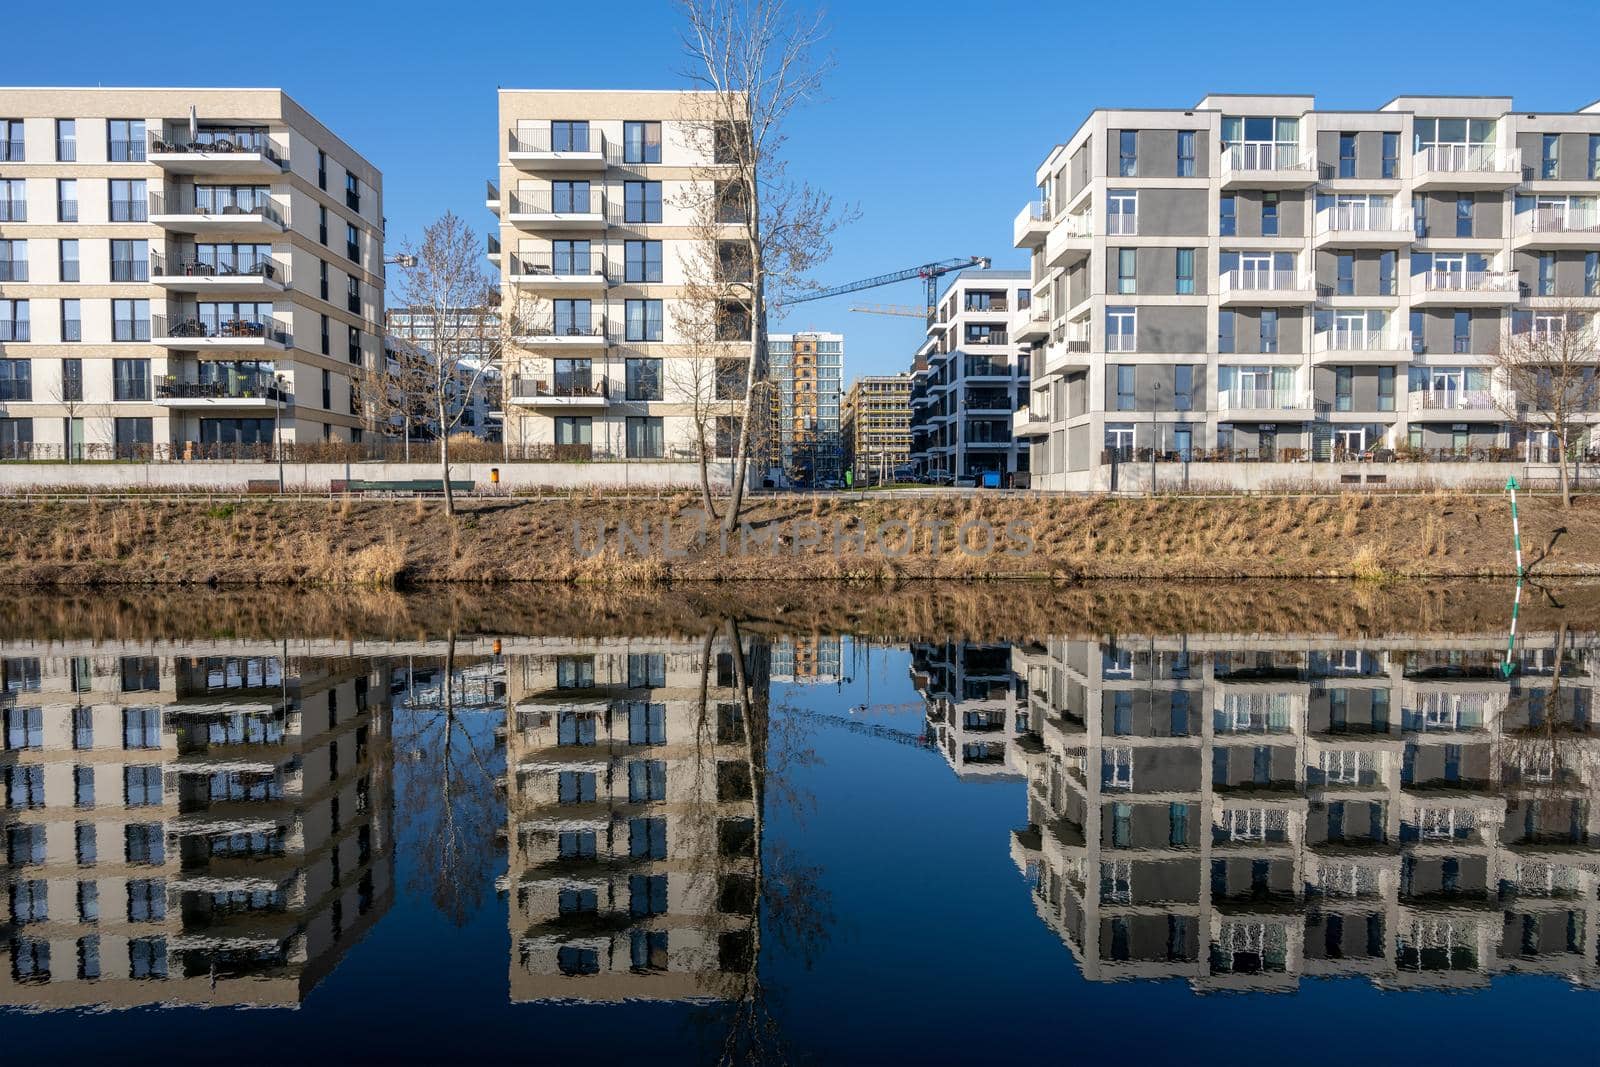 Modern apartment buildings in Berlin, Germany by elxeneize